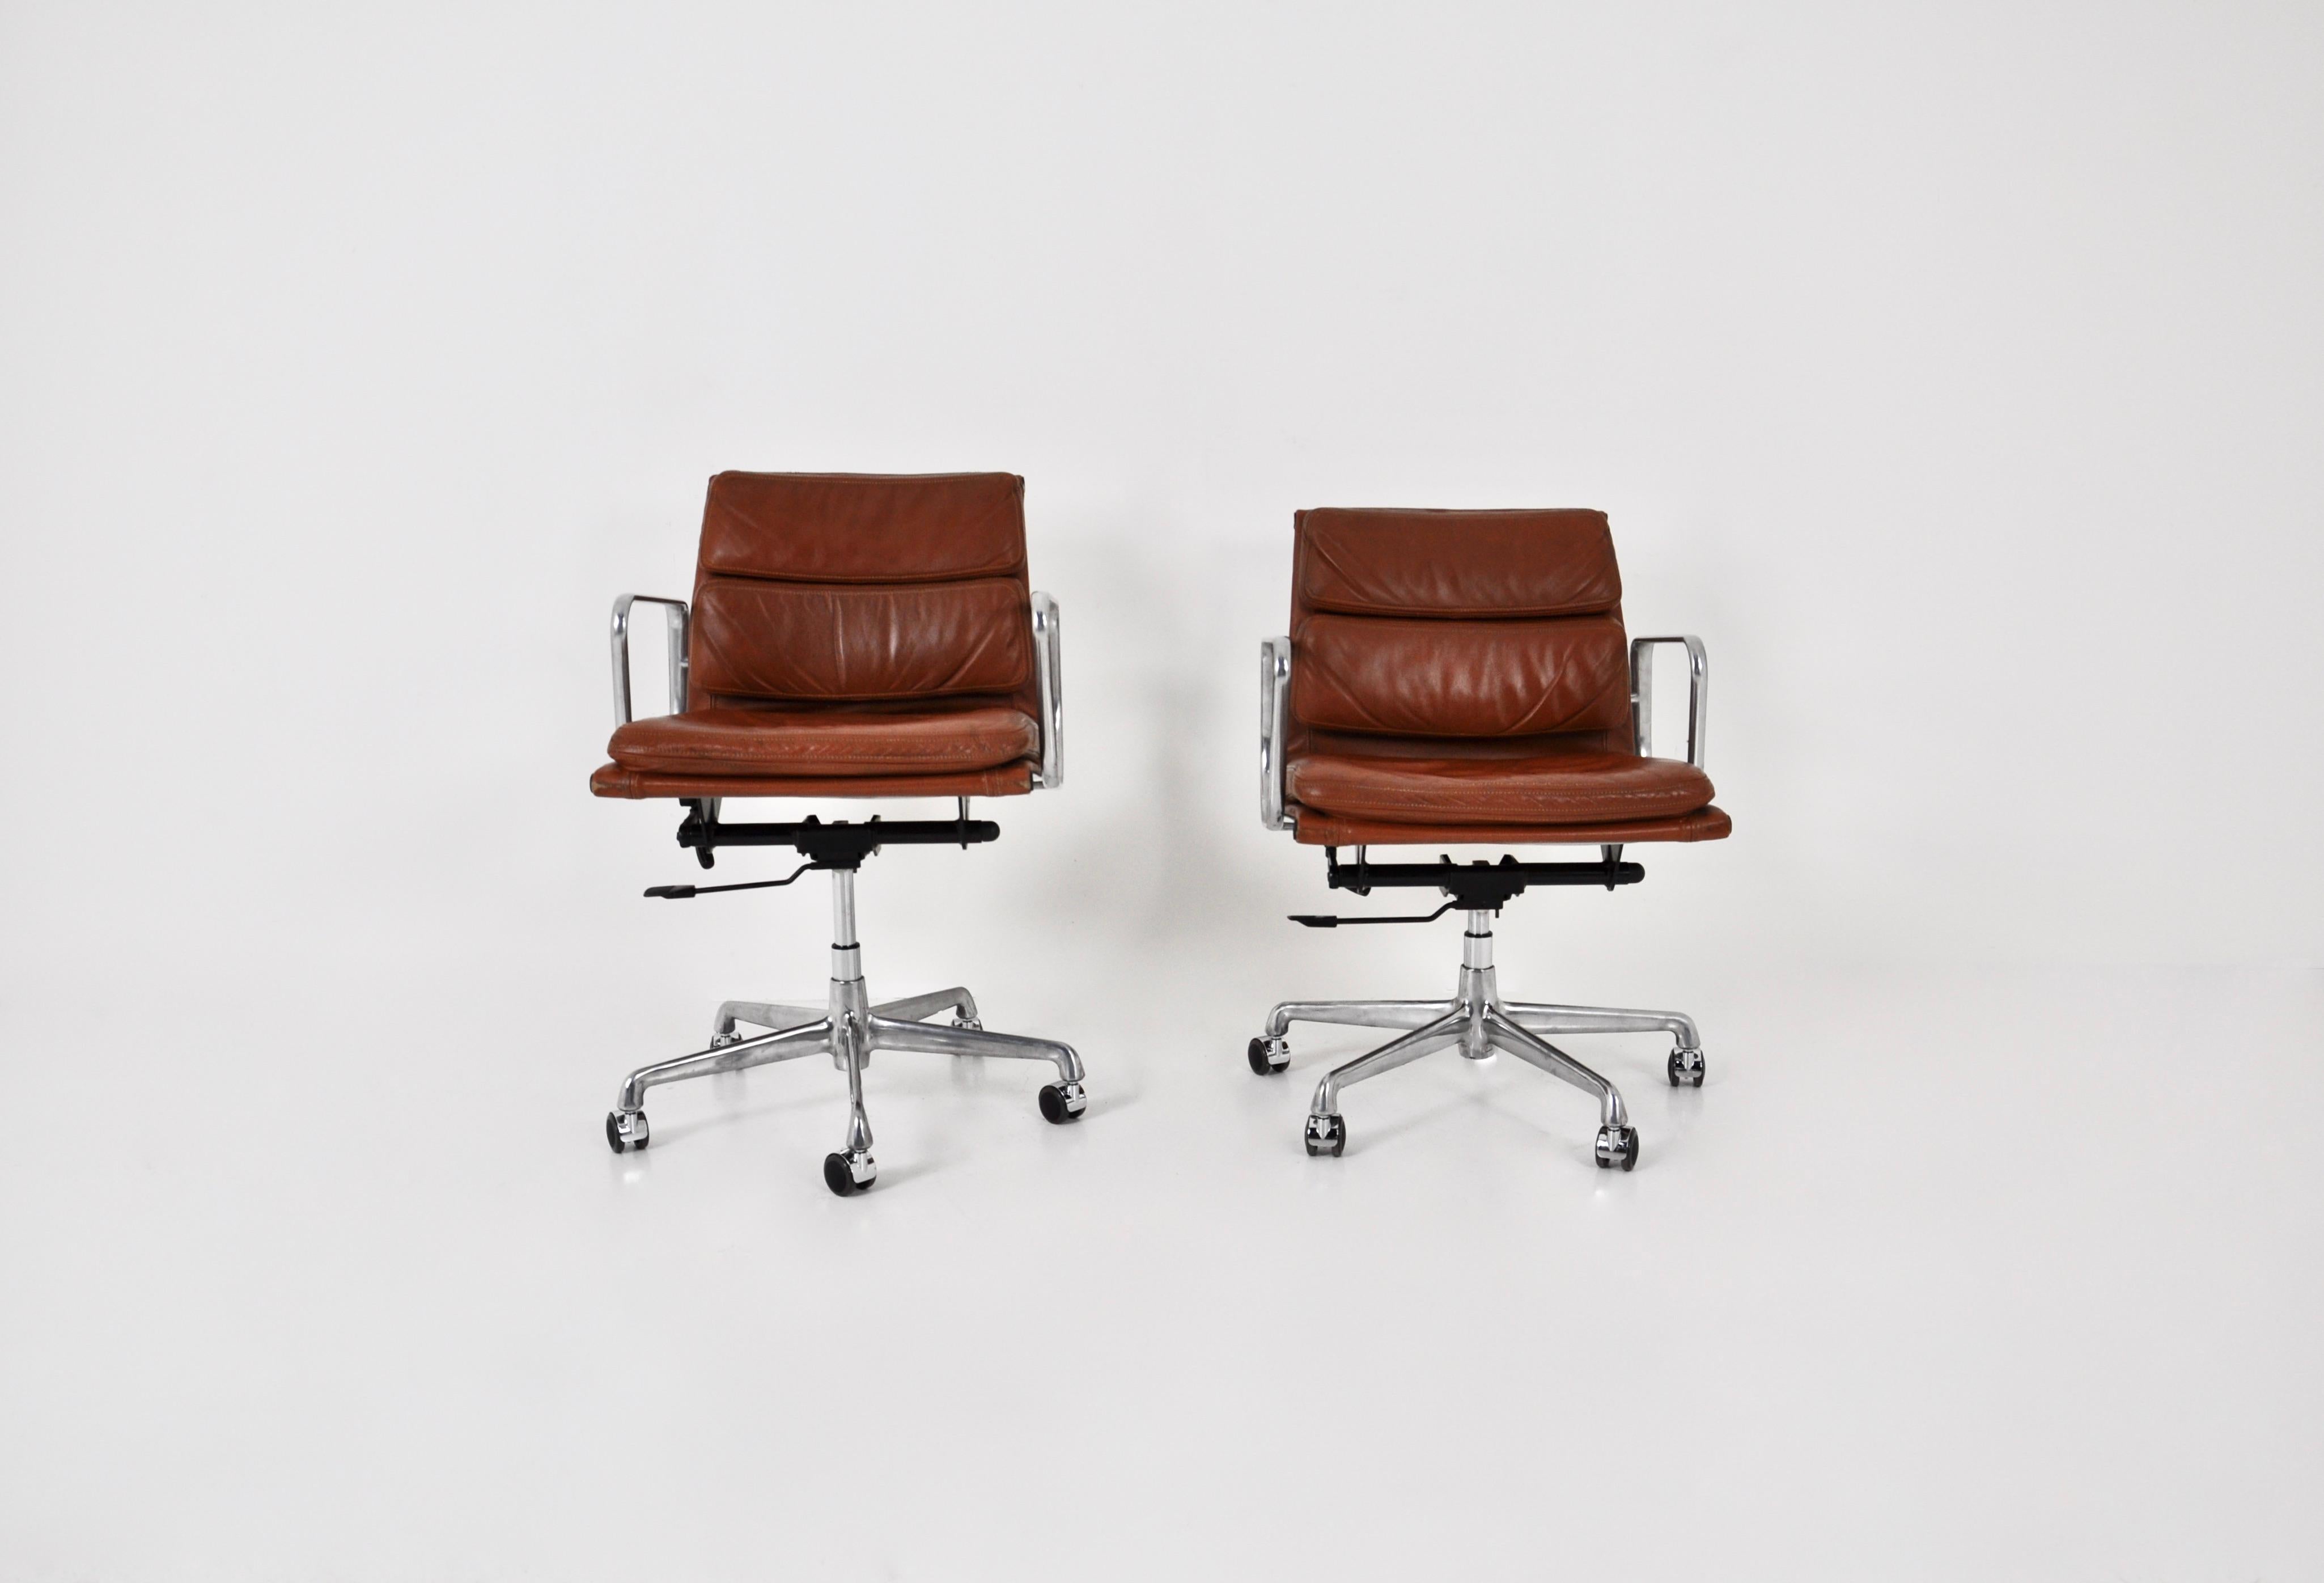 EA 217 cognac Soft Pad Chair von Charles & Ray Eames für ICF, 1970er Jahre, 2 Stück (Ende des 20. Jahrhunderts)